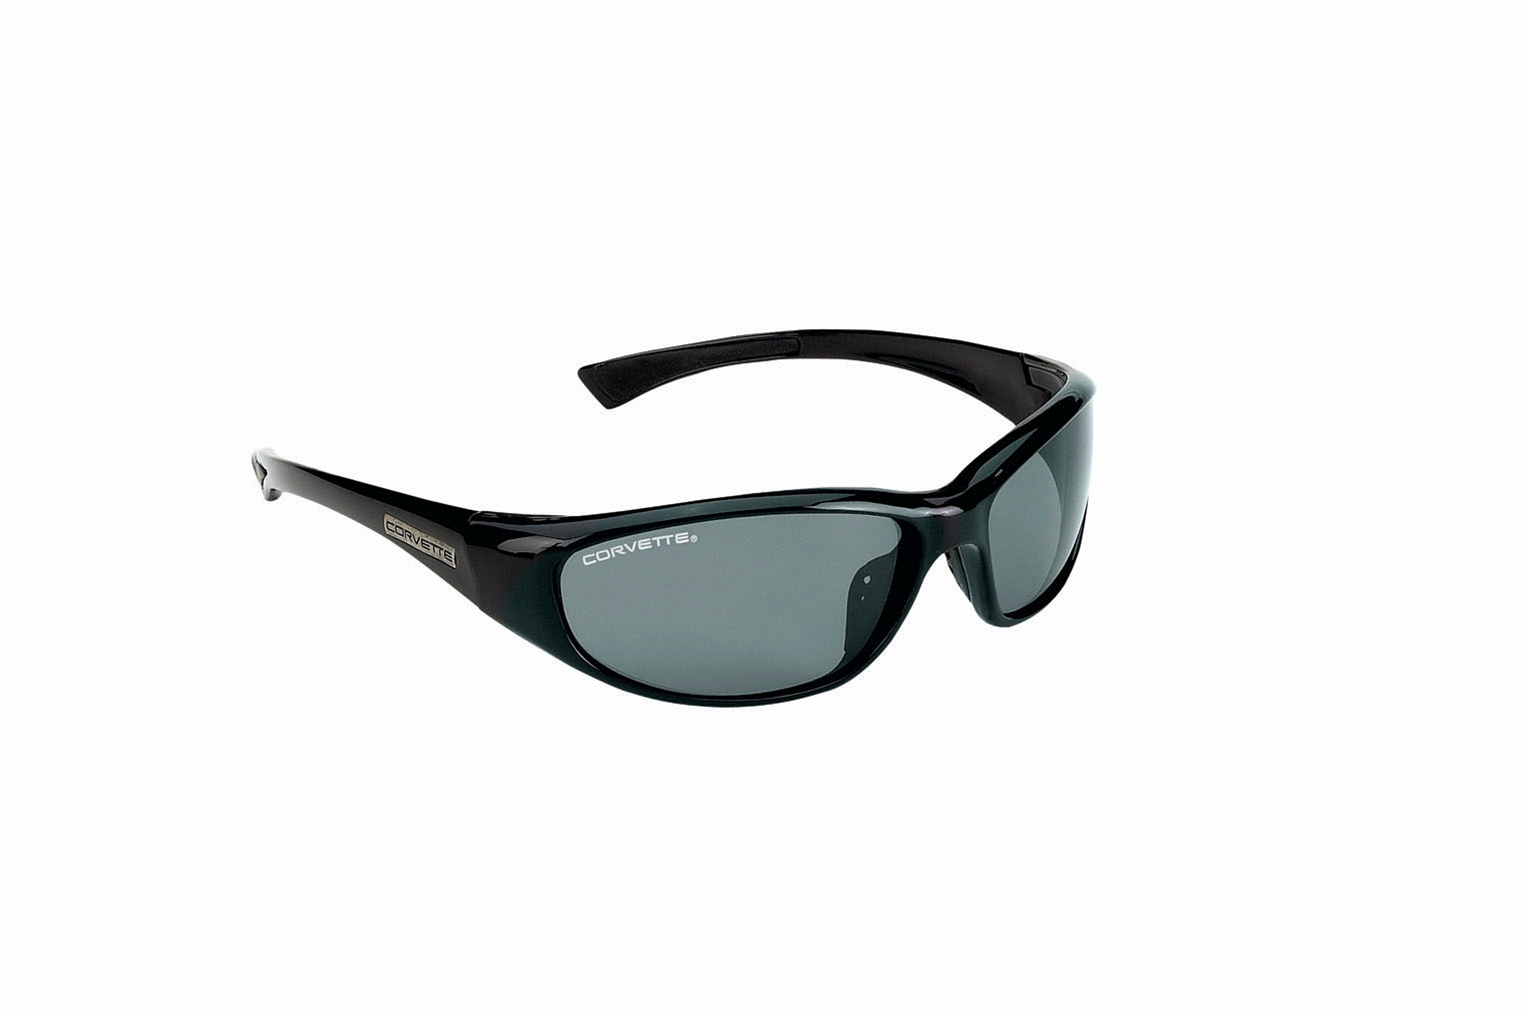 Corvette Series Sun Glasses Polarized Lens Gloss Black with Smoke Lens